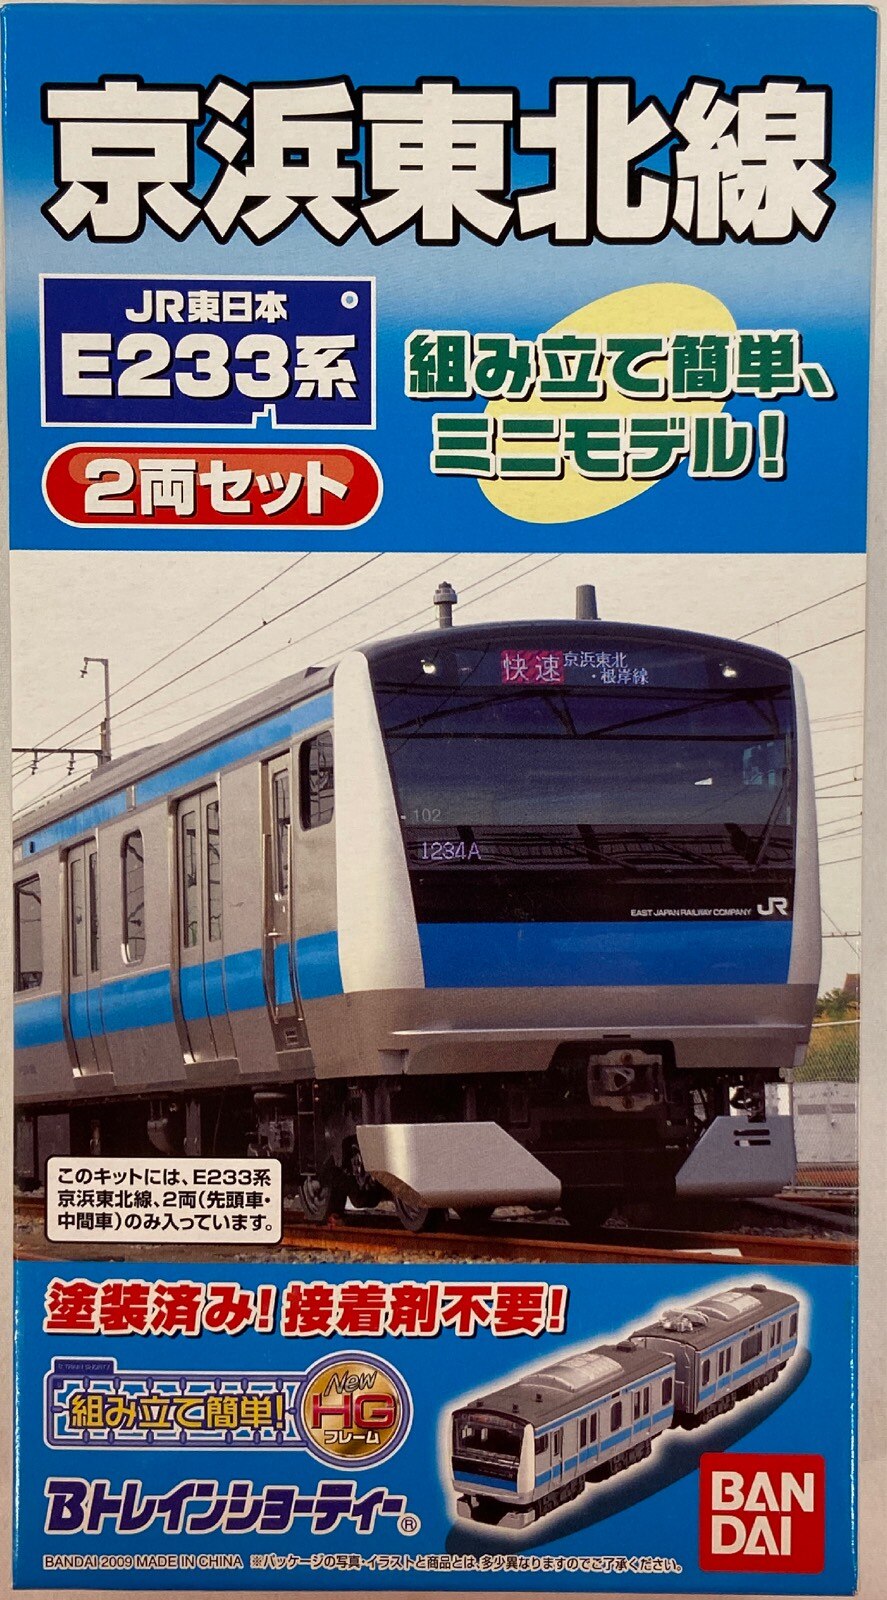 Bトレインショーティー 205系 京浜東北線 - 鉄道模型